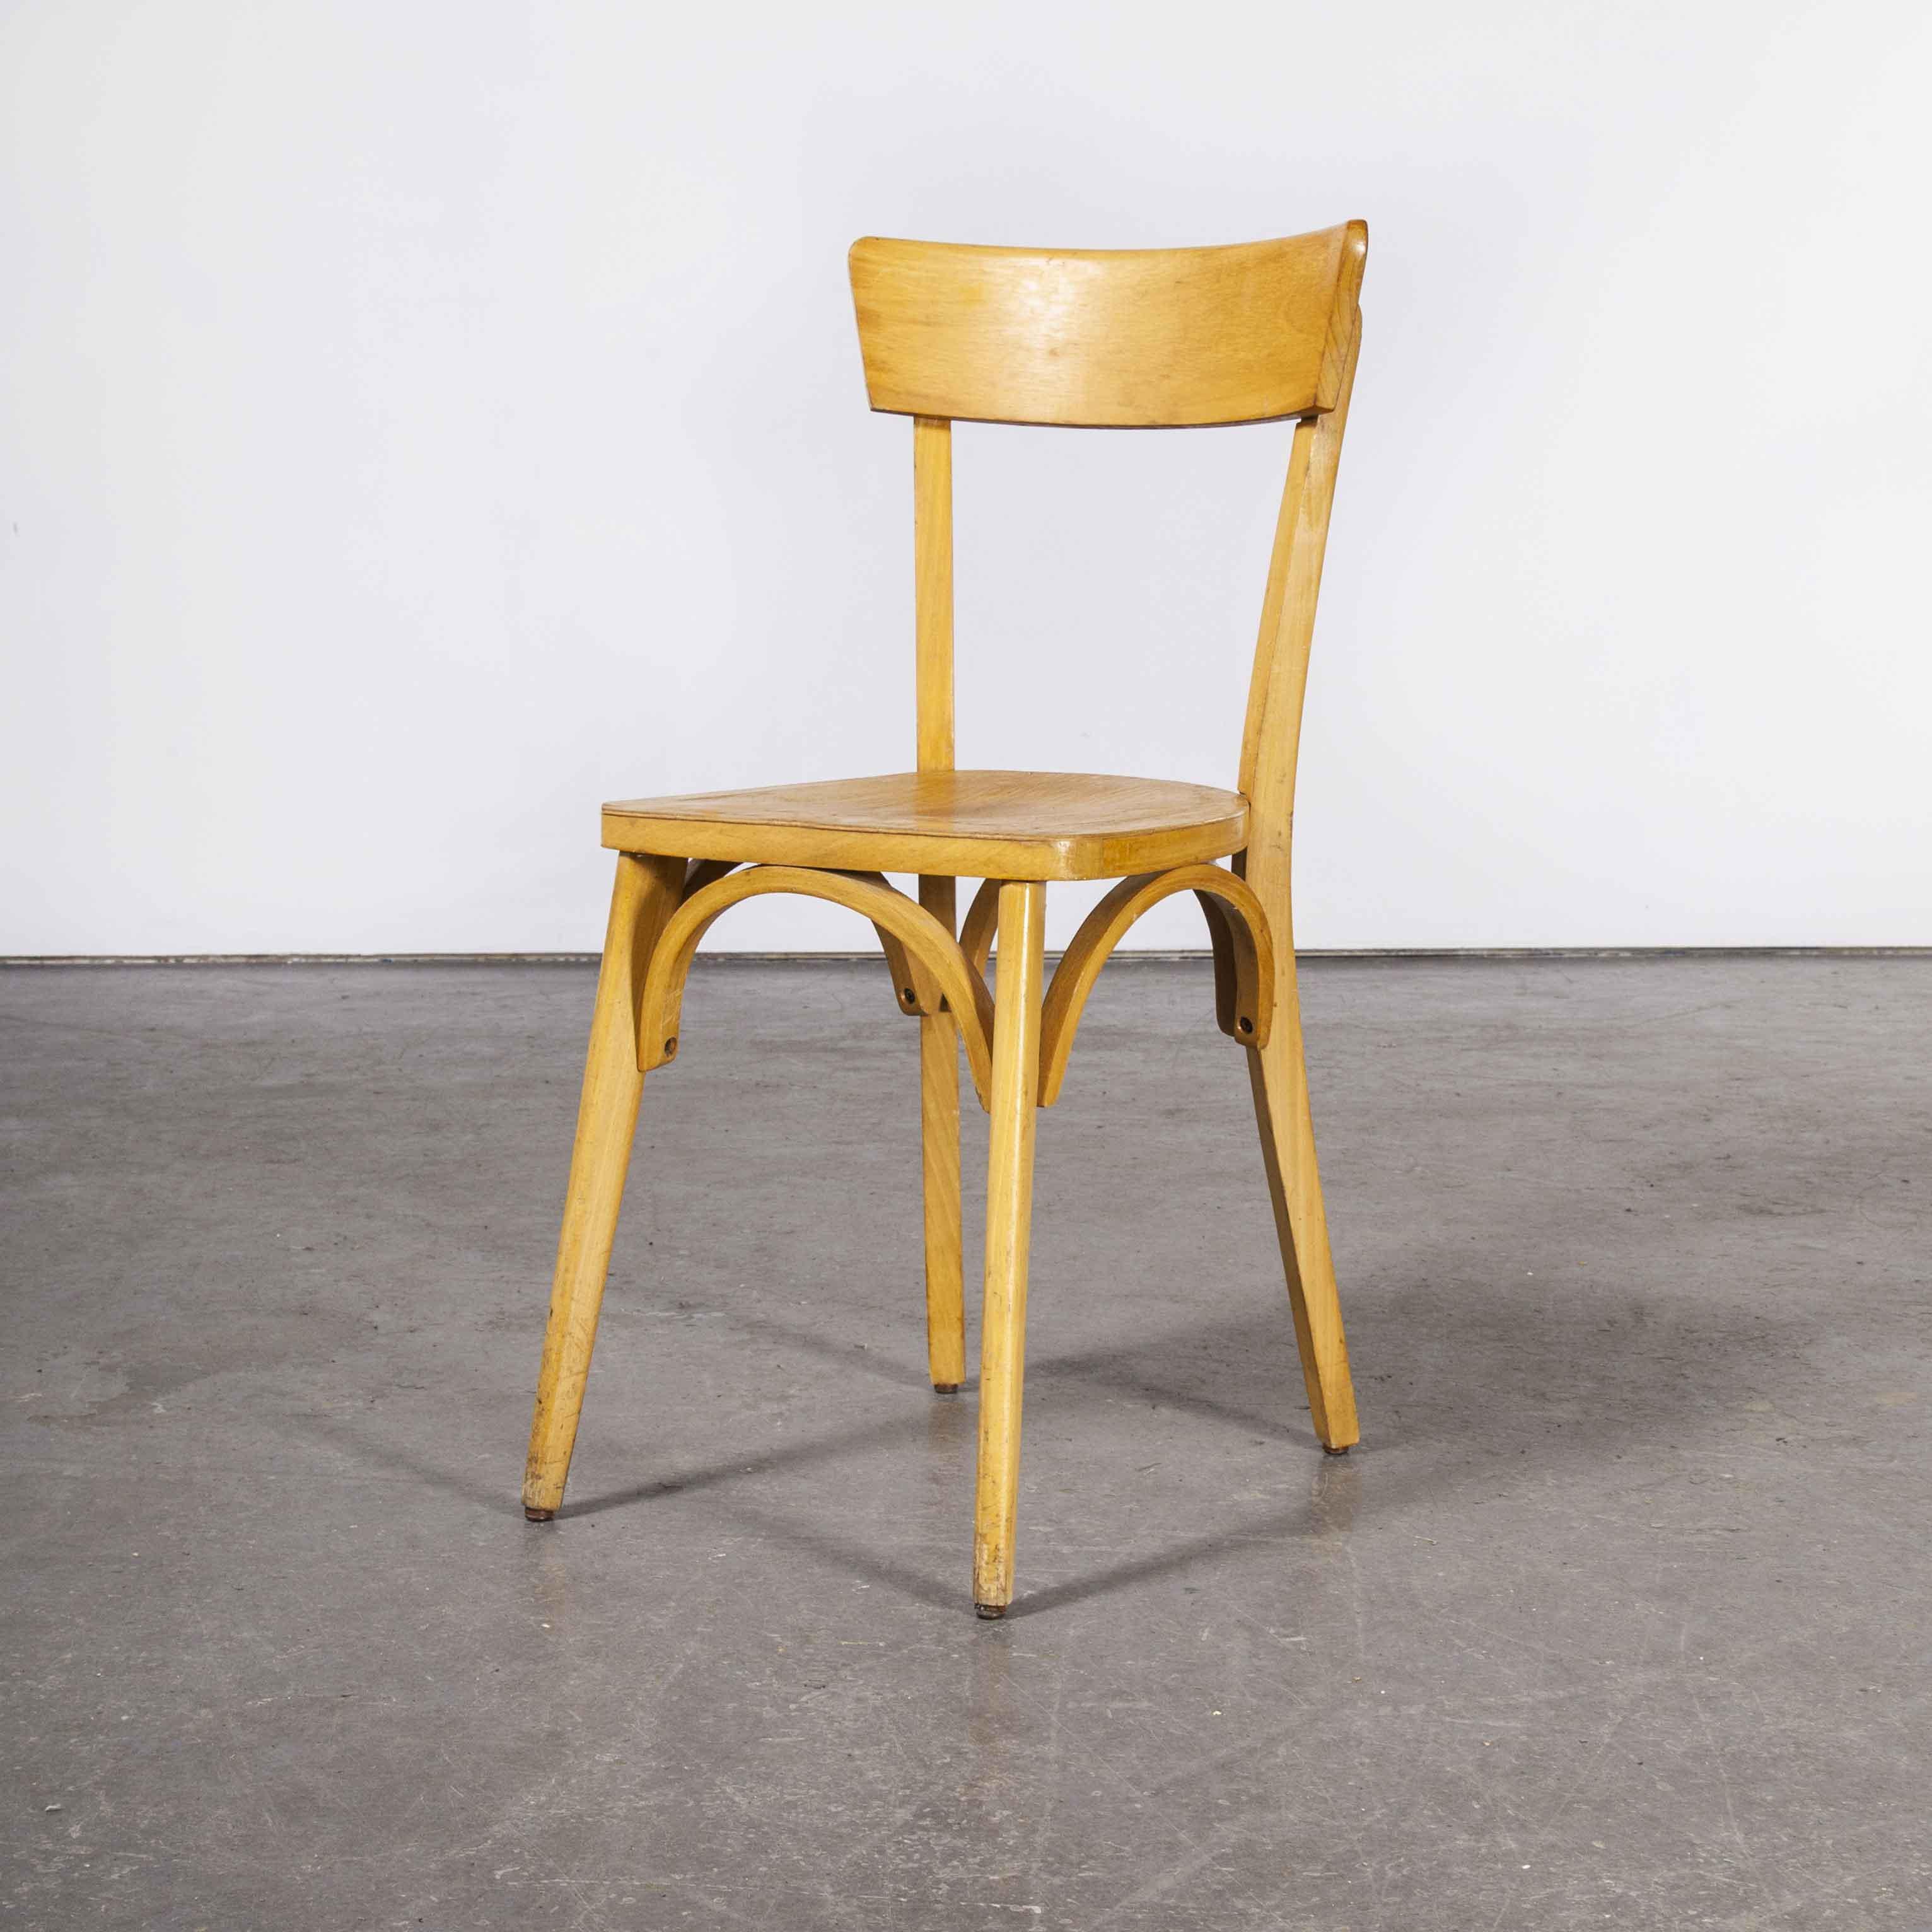 Chaises de salle à manger en bois courbé Luterma de fabrication française des années 1950 - ensemble de douze (Modèle OB). Le processus de cintrage du hêtre à la vapeur pour créer des chaises élégantes a été découvert et développé par Thonet, mais